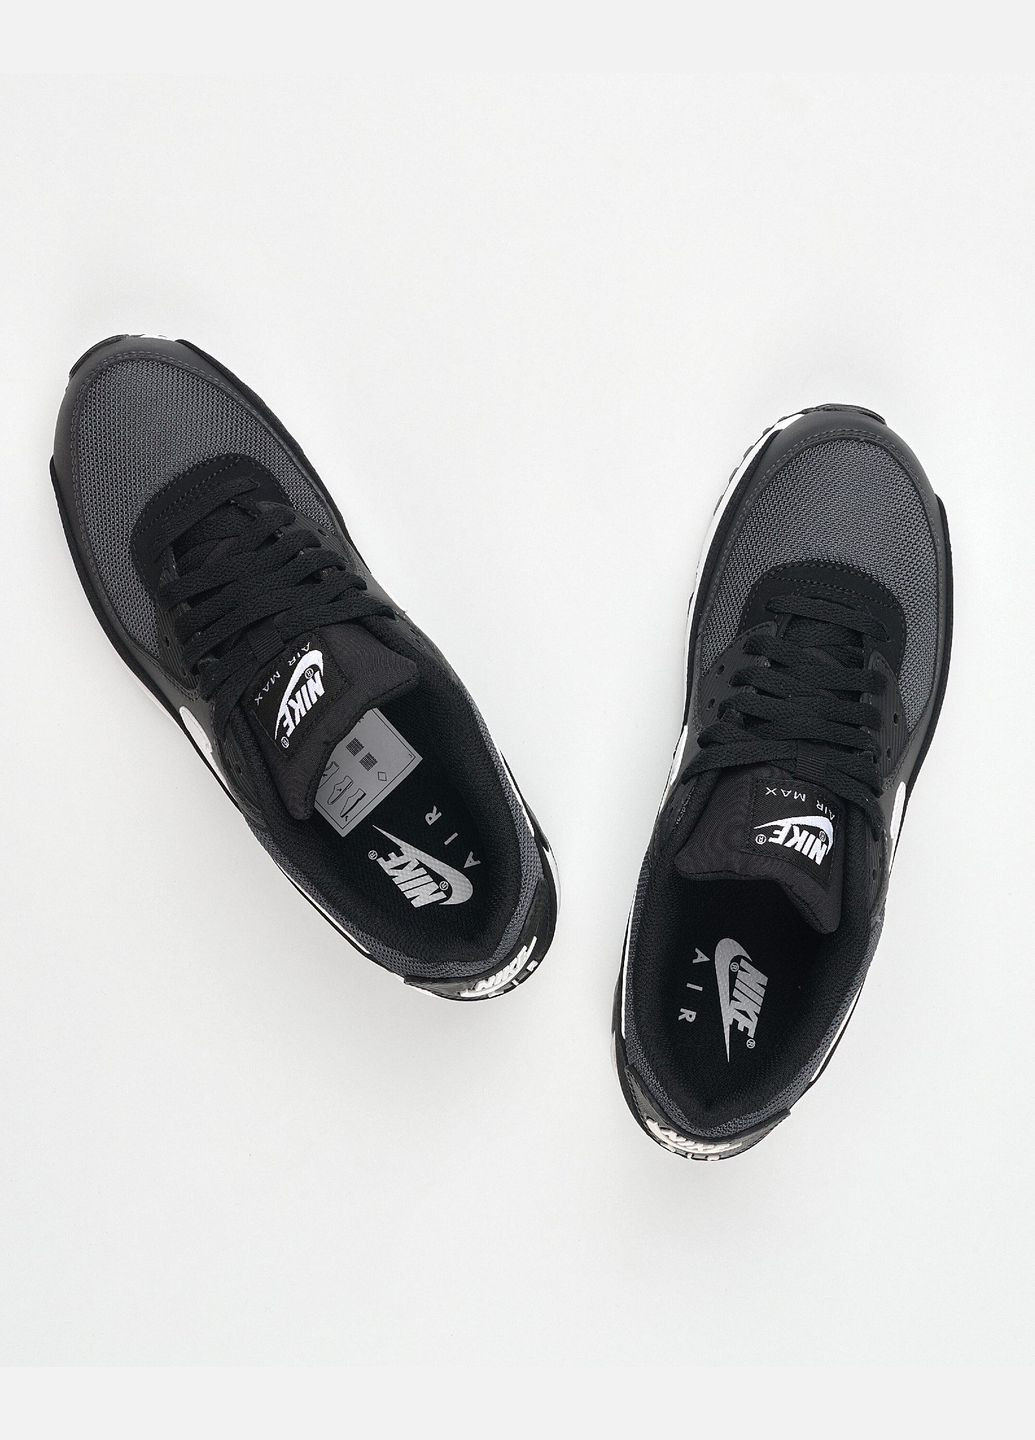 Білі всесезон кросівки чоловічі air max 90 cn8490-002 весна-осінь шкіра текстиль чорні Nike